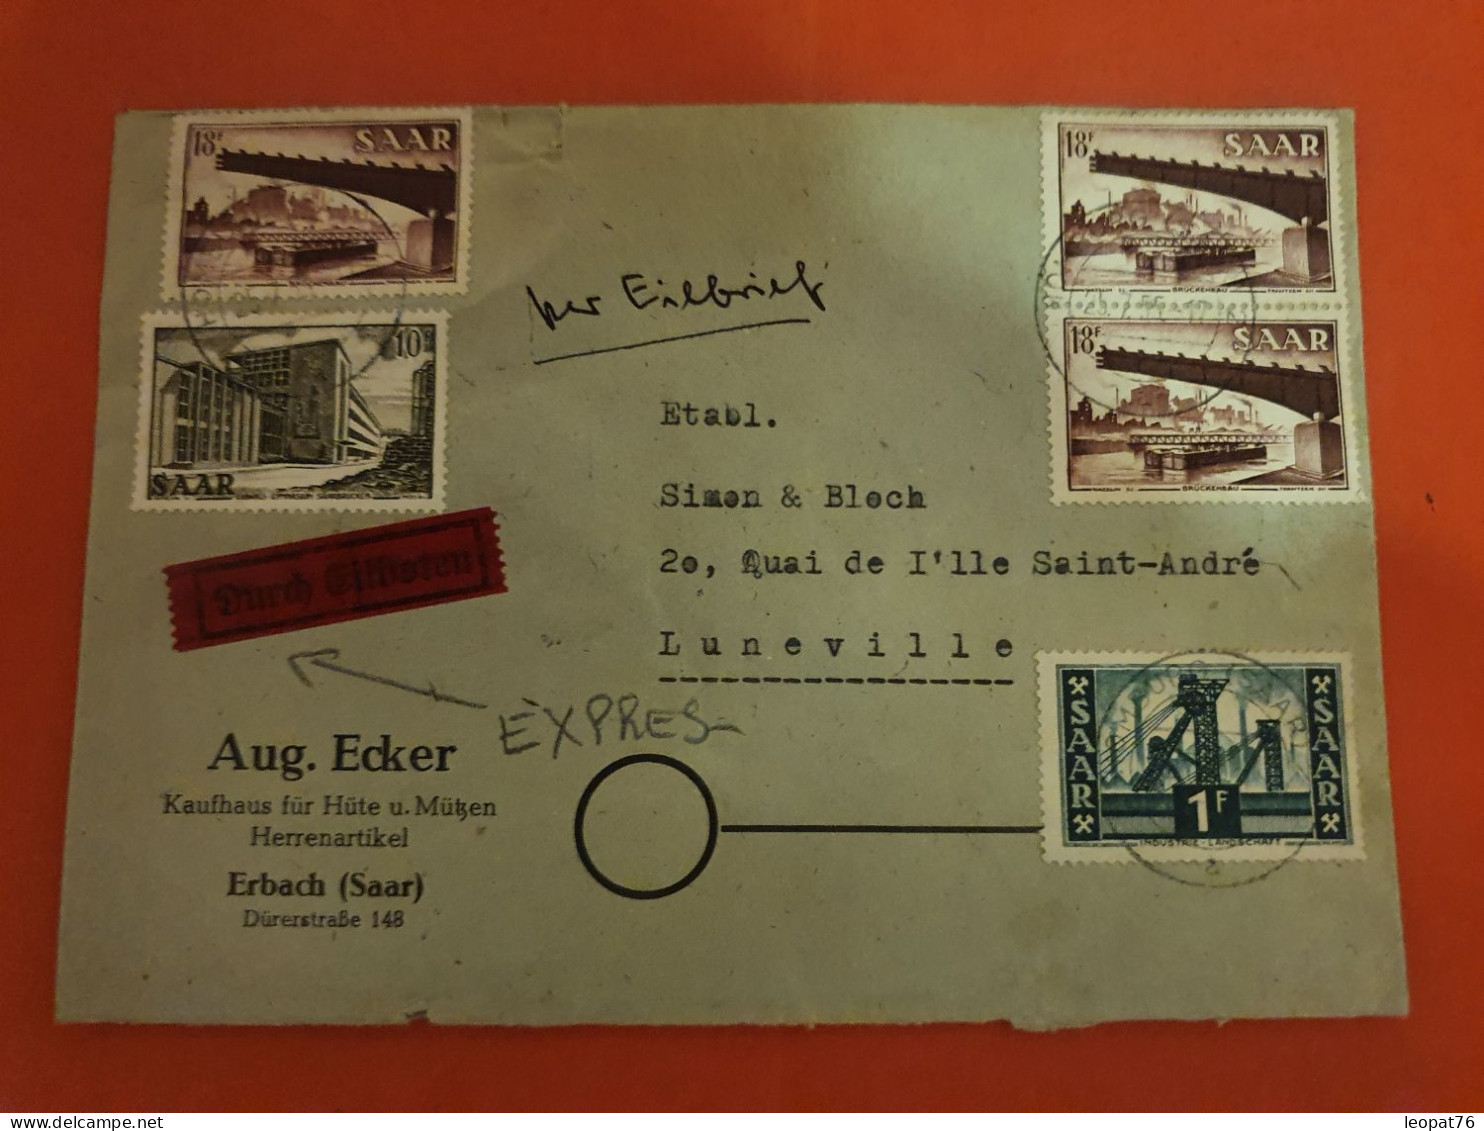 Sarre - Enveloppe Commerciale De Arbach En Exprès Pour La France En 1955 - D 352 - Lettres & Documents